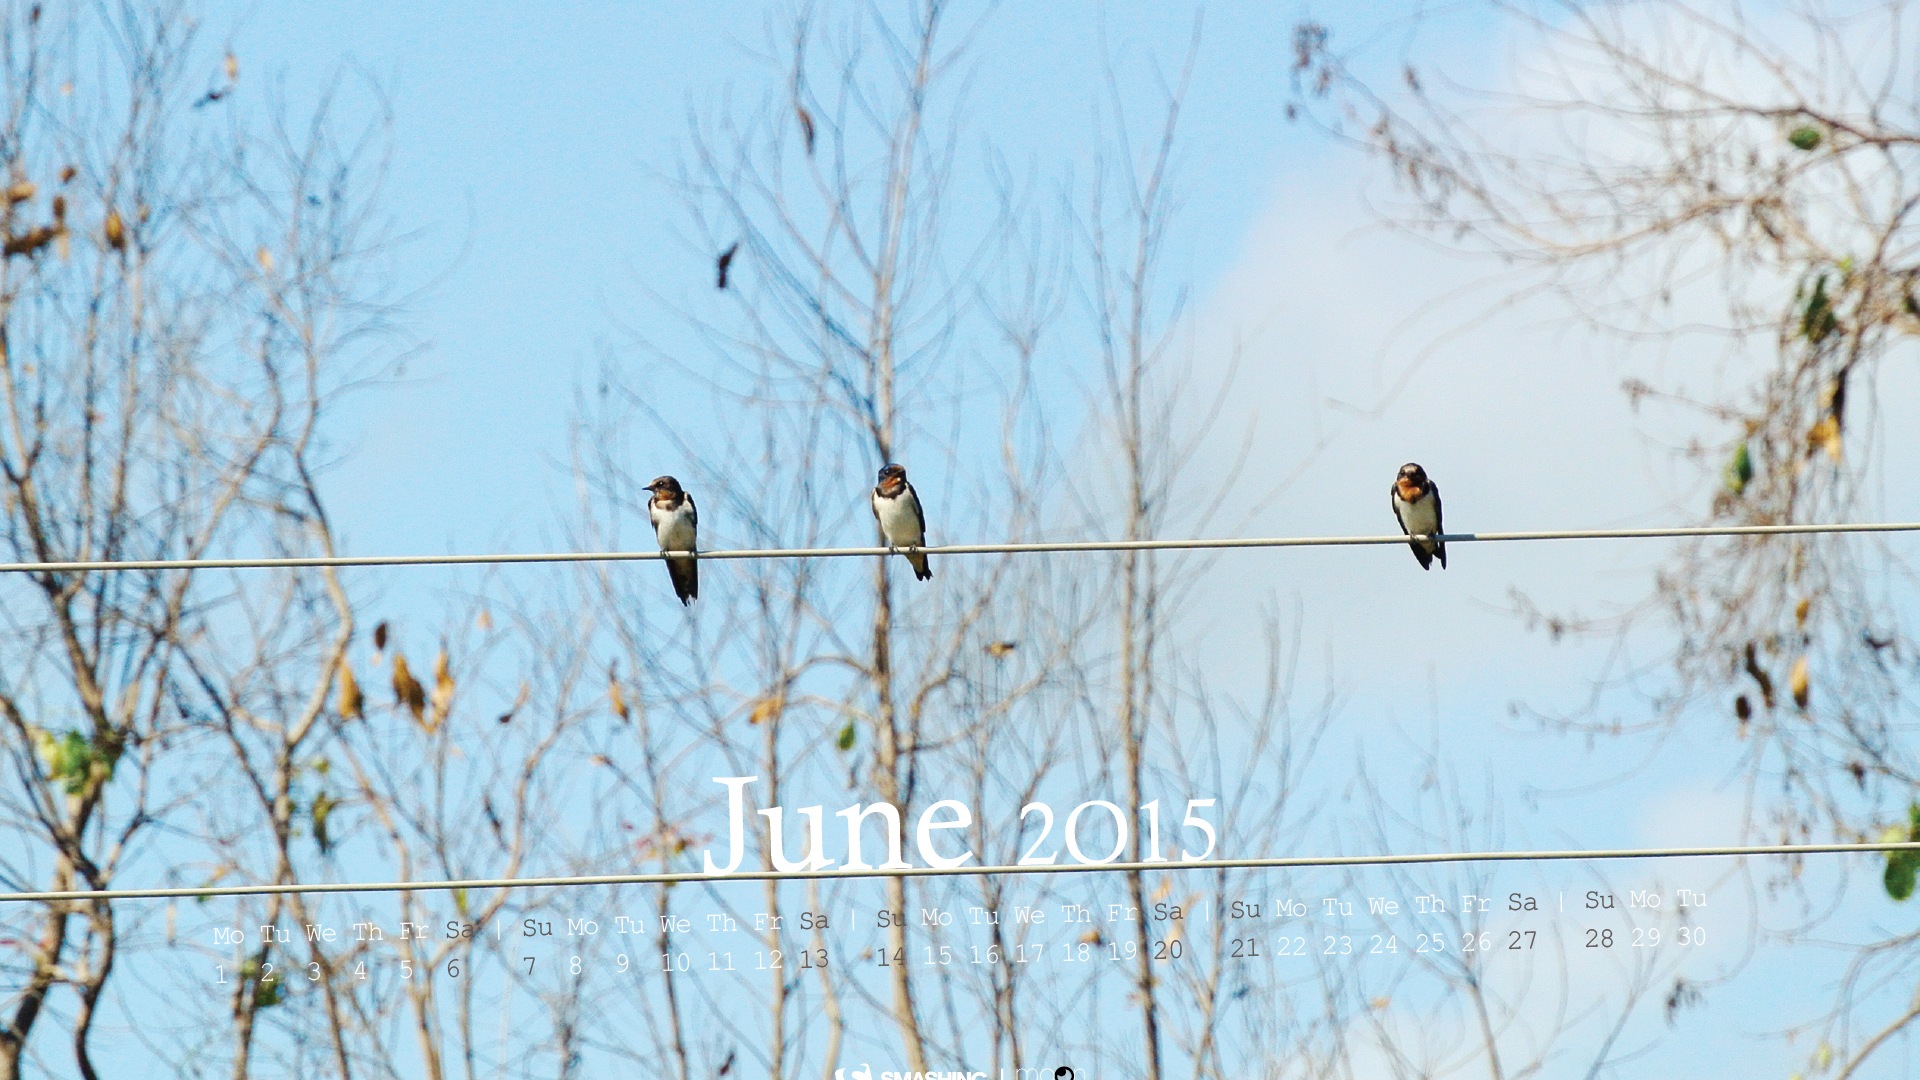 June 2015 calendar wallpaper (2) #15 - 1920x1080